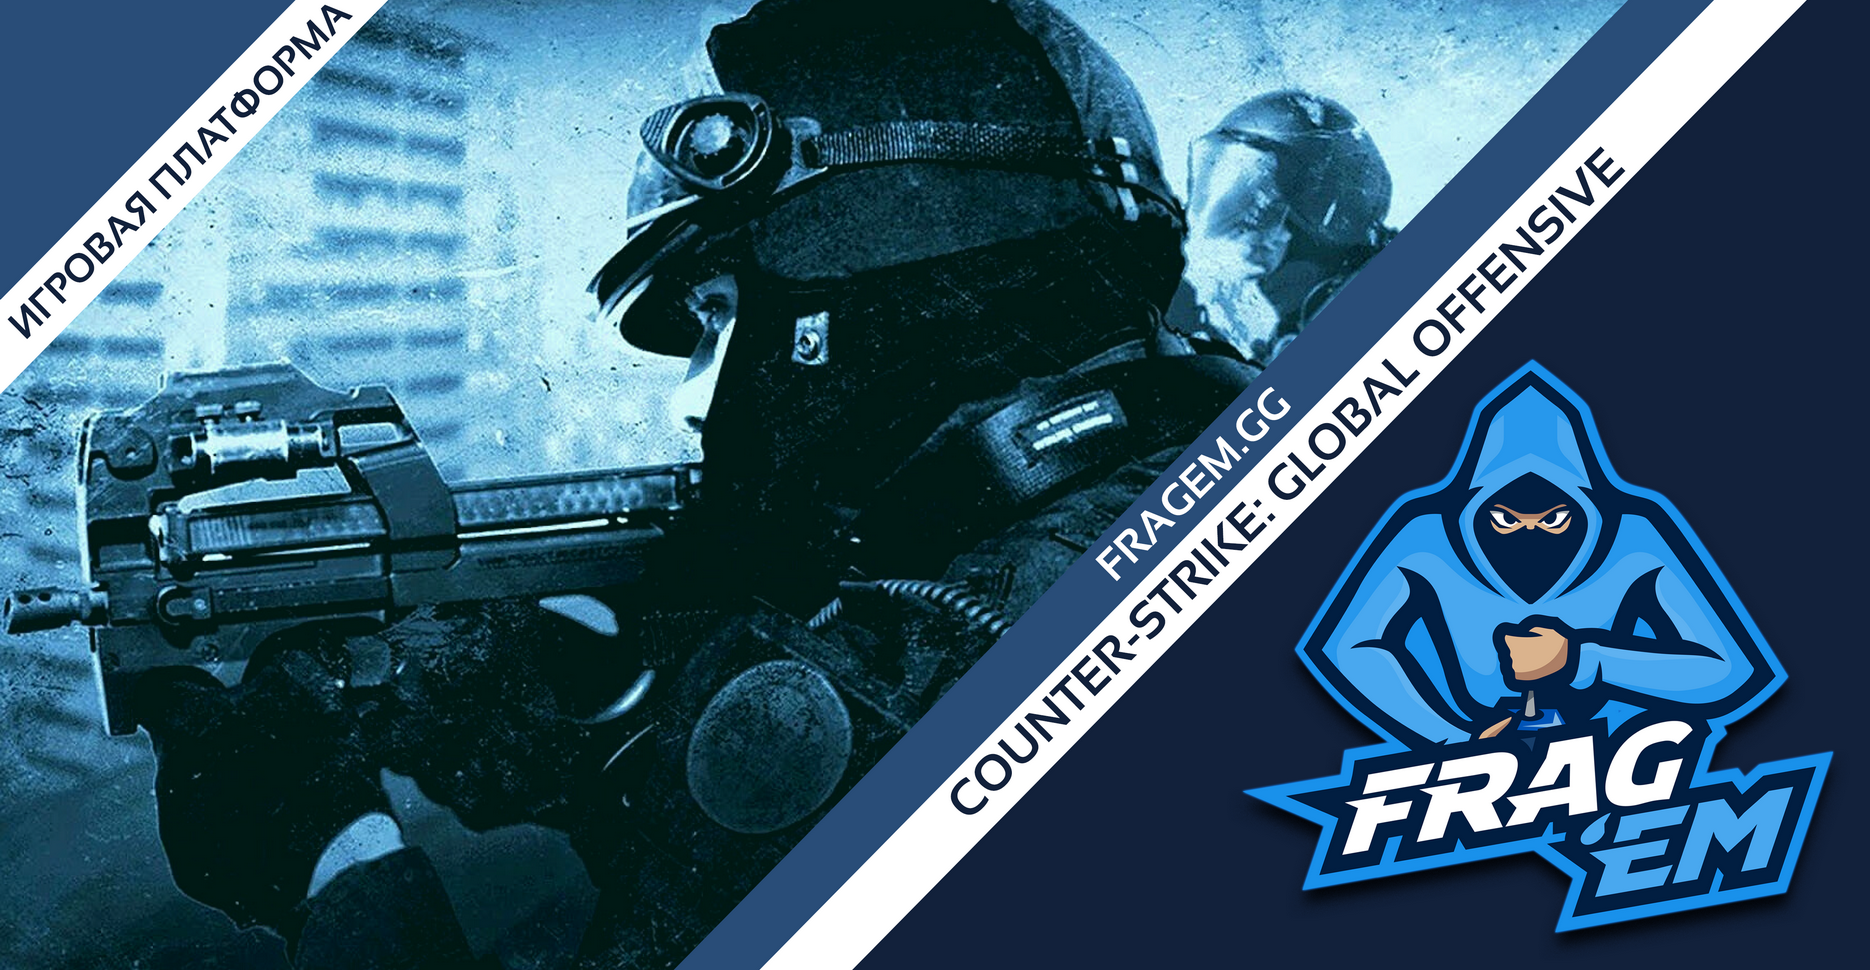 Бесплатная киберспортивная платформа для соревнований по Counter-Strike Global Offensive, платформа FragEM.GG